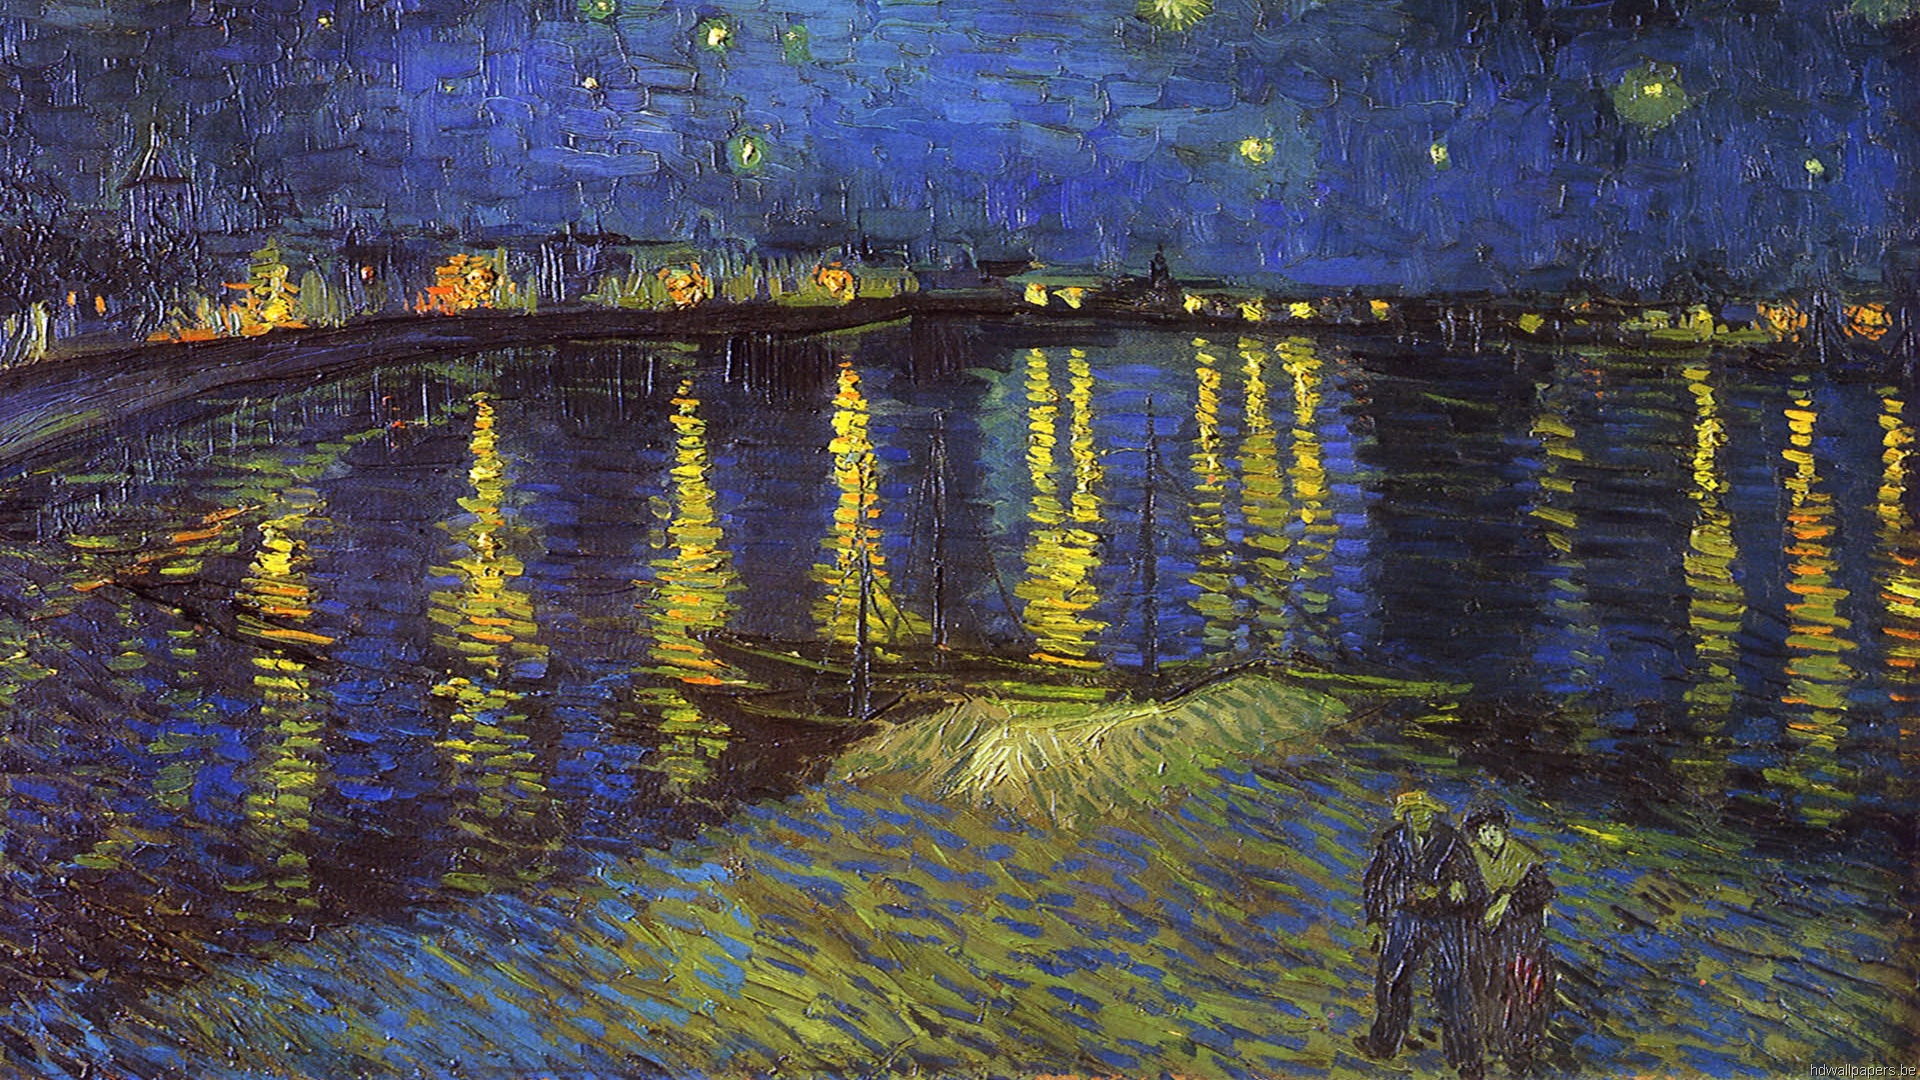 Bạn là người yêu nghệ thuật và muốn đưa những tác phẩm nghệ thuật của Vincent Van Gogh lên màn hình desktop của mình? Tải ngay Vincent van Gogh Wallpapers HD và cảm nhận một thế giới nghệ thuật đầy sắc màu. Hãy để những bức tranh này đưa bạn đến với một thế giới mới, một thế giới đầy cảm xúc và sự ngưỡng mộ.